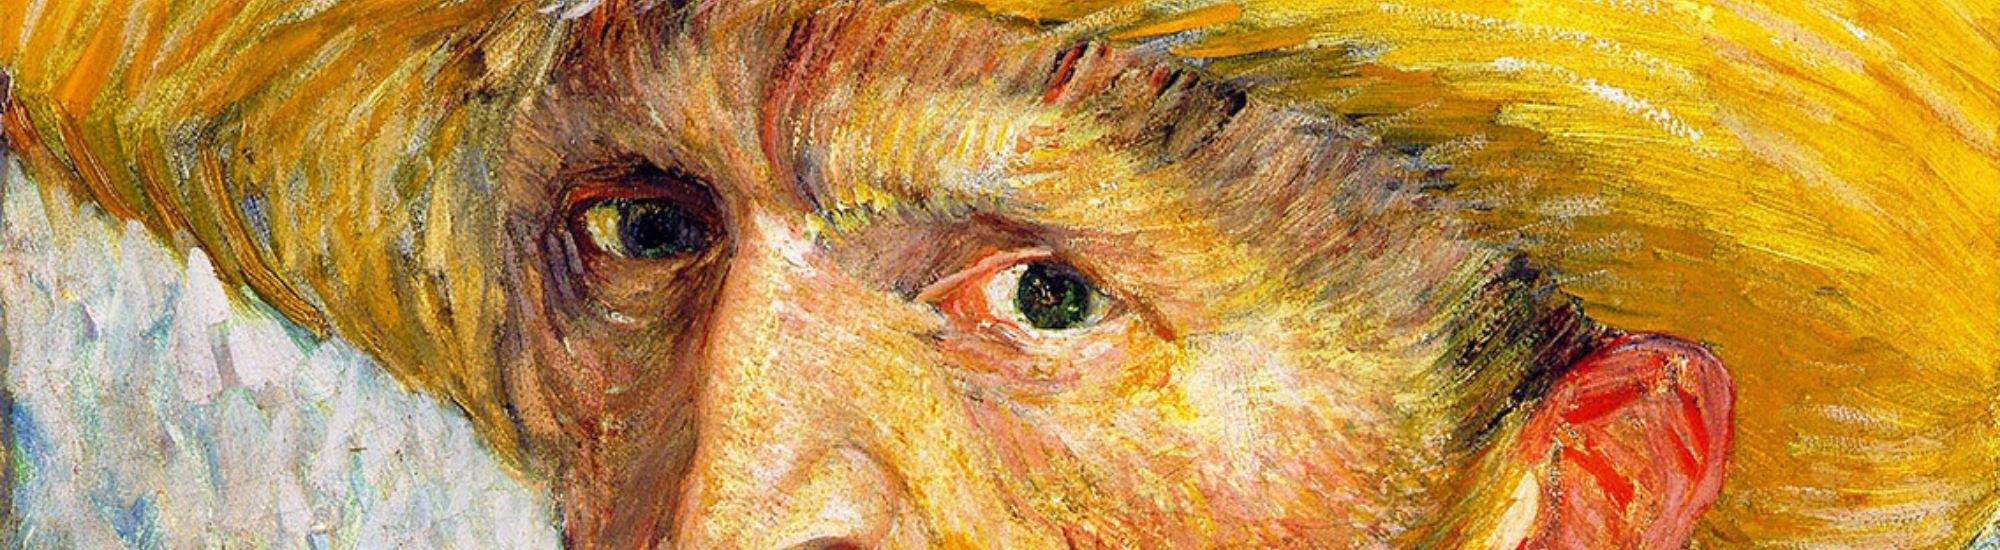 Multizintuiglijke Tentoonstelling van Van Gogh in Krakau: Een Ontmoeting met Grote Kunst